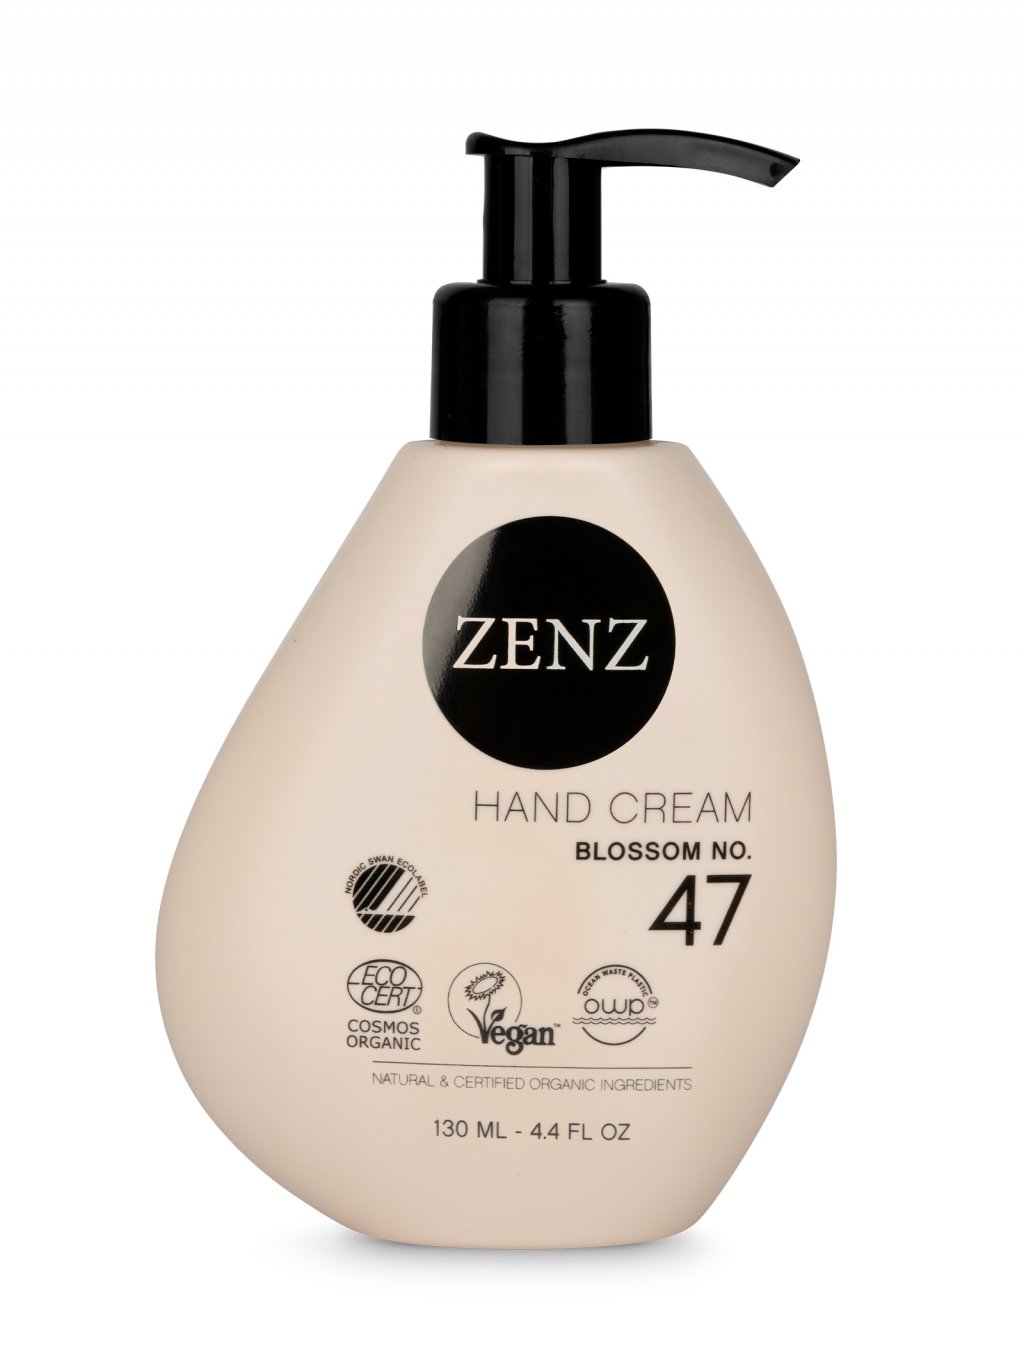 zenz-hand-cream-blossom-no-47-130-ml-prirodni-krem-na-ruce